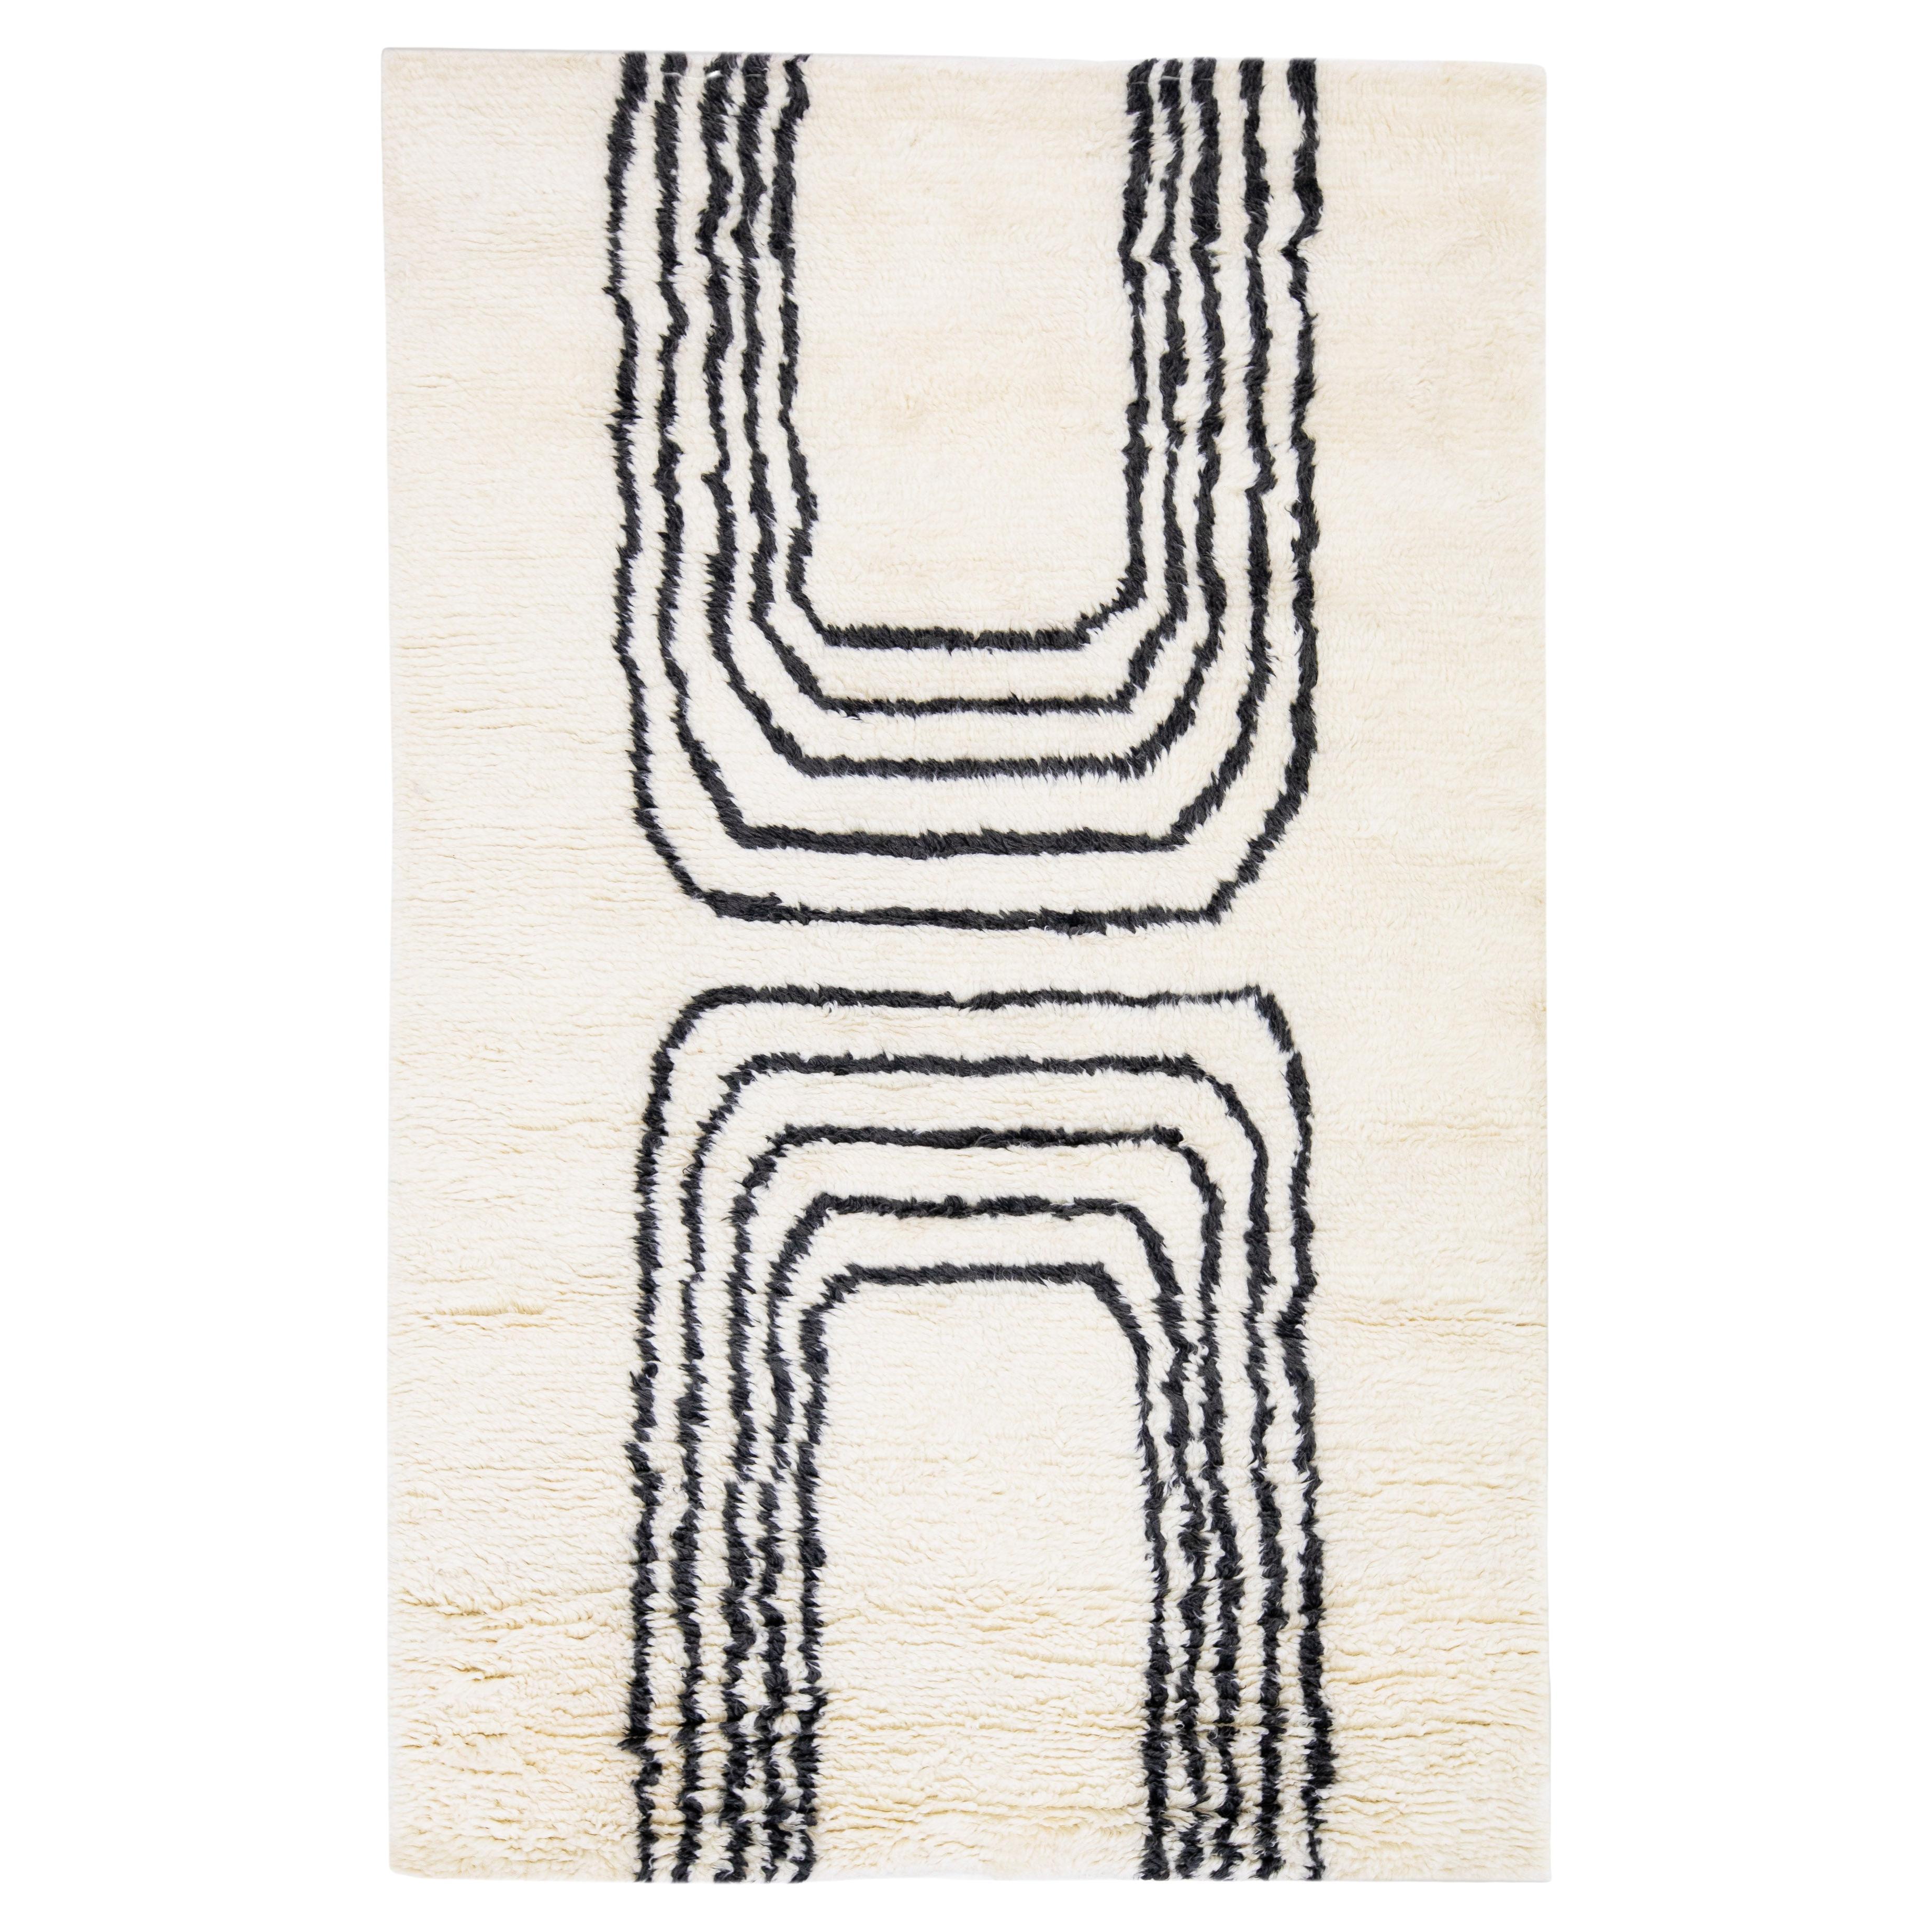  Tapis en laine ivoire de style marocain moderne fait à la main avec un design minimaliste par Apadana